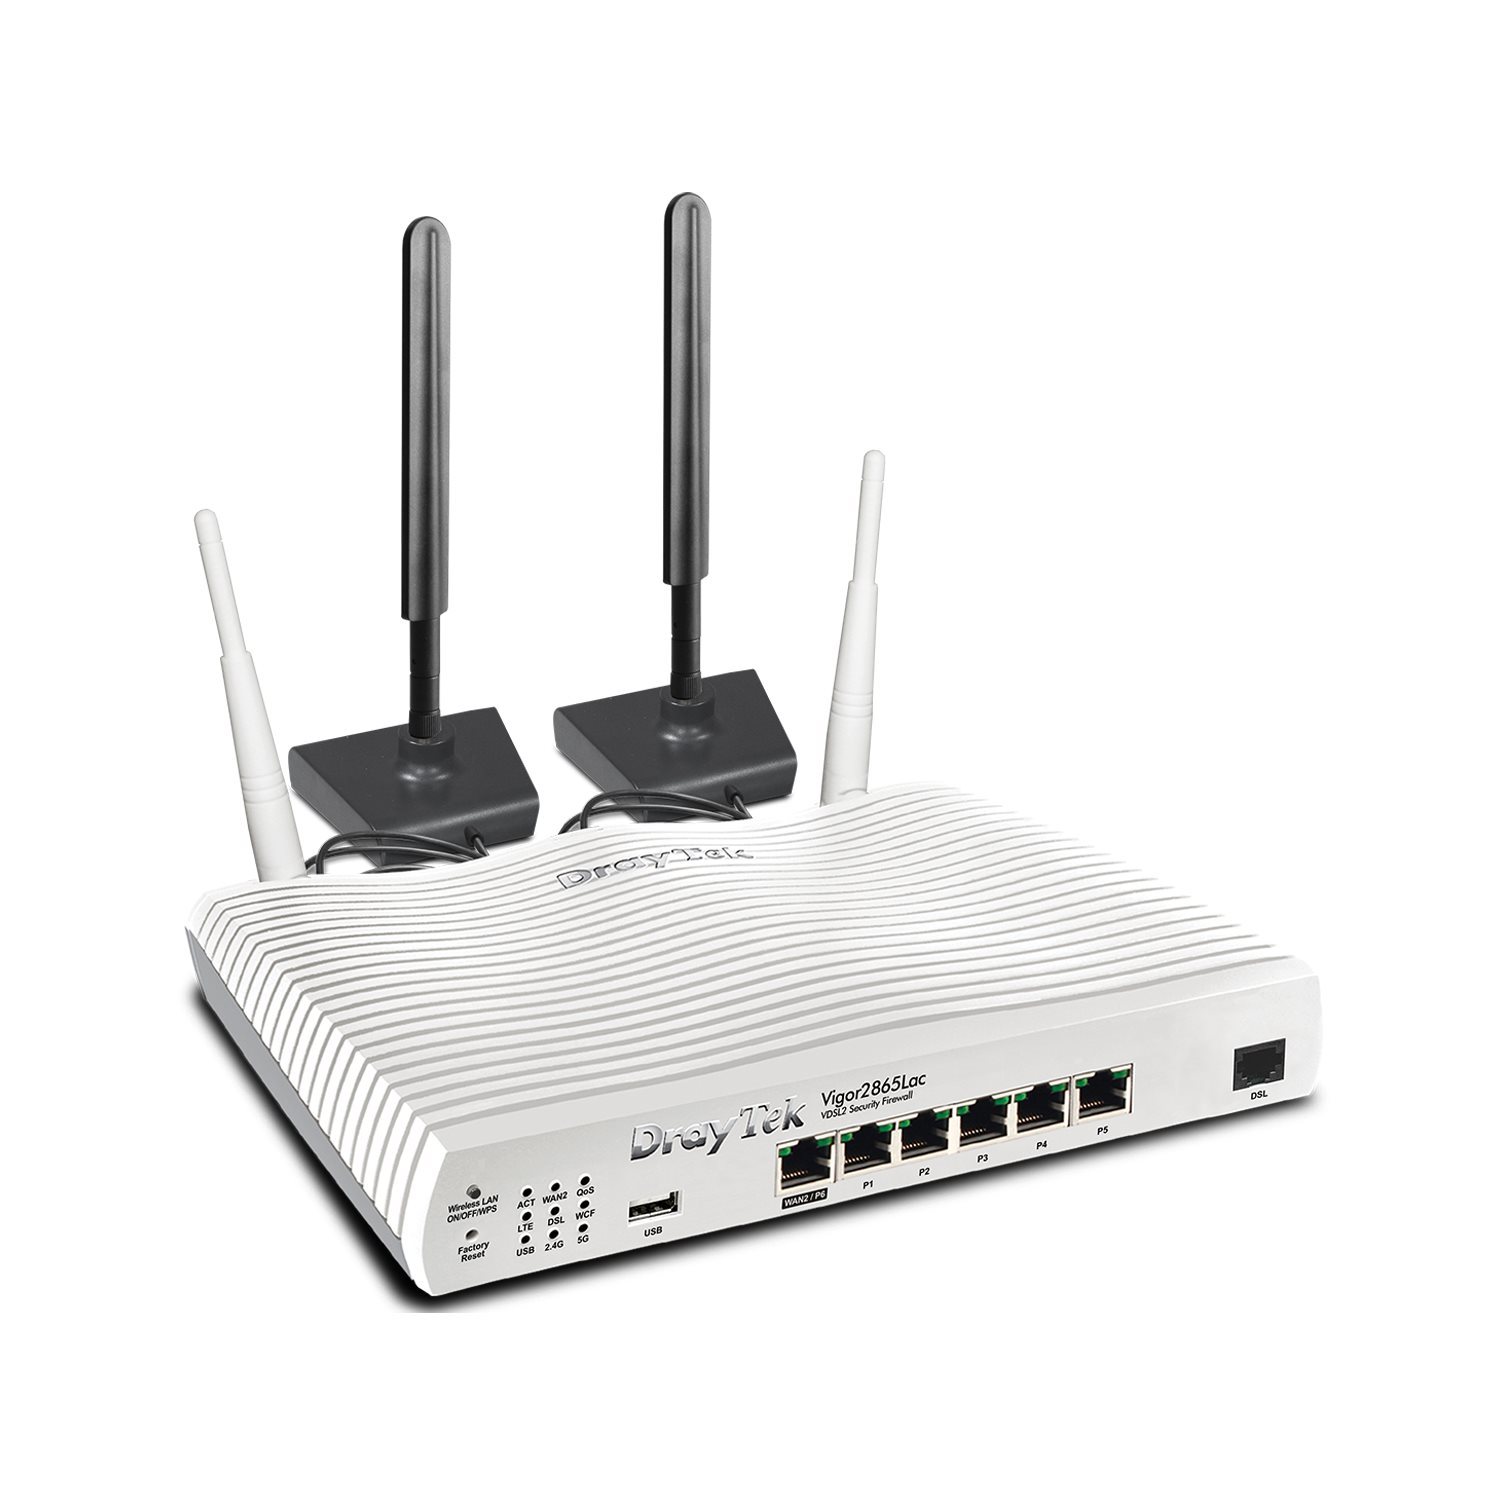   Routeurs Pro   Modem routeur multiwan LTE Giga 32 VPN Wifi ac VIGOR2865LAC